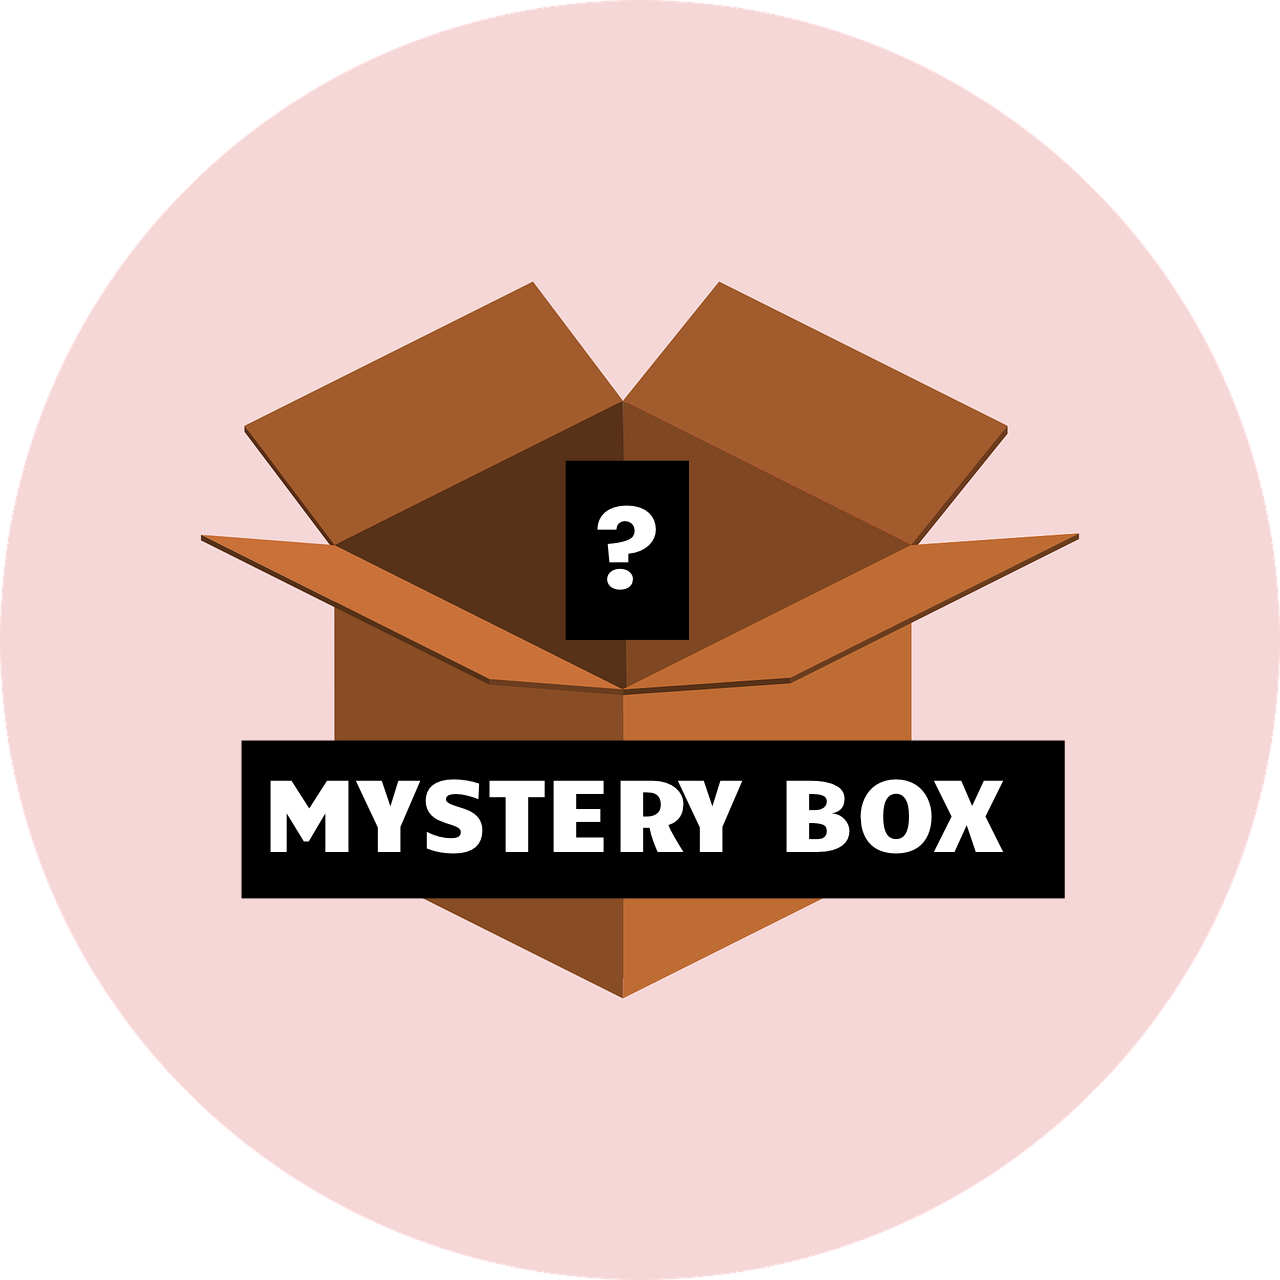 $49 Black Friday Mystery Box